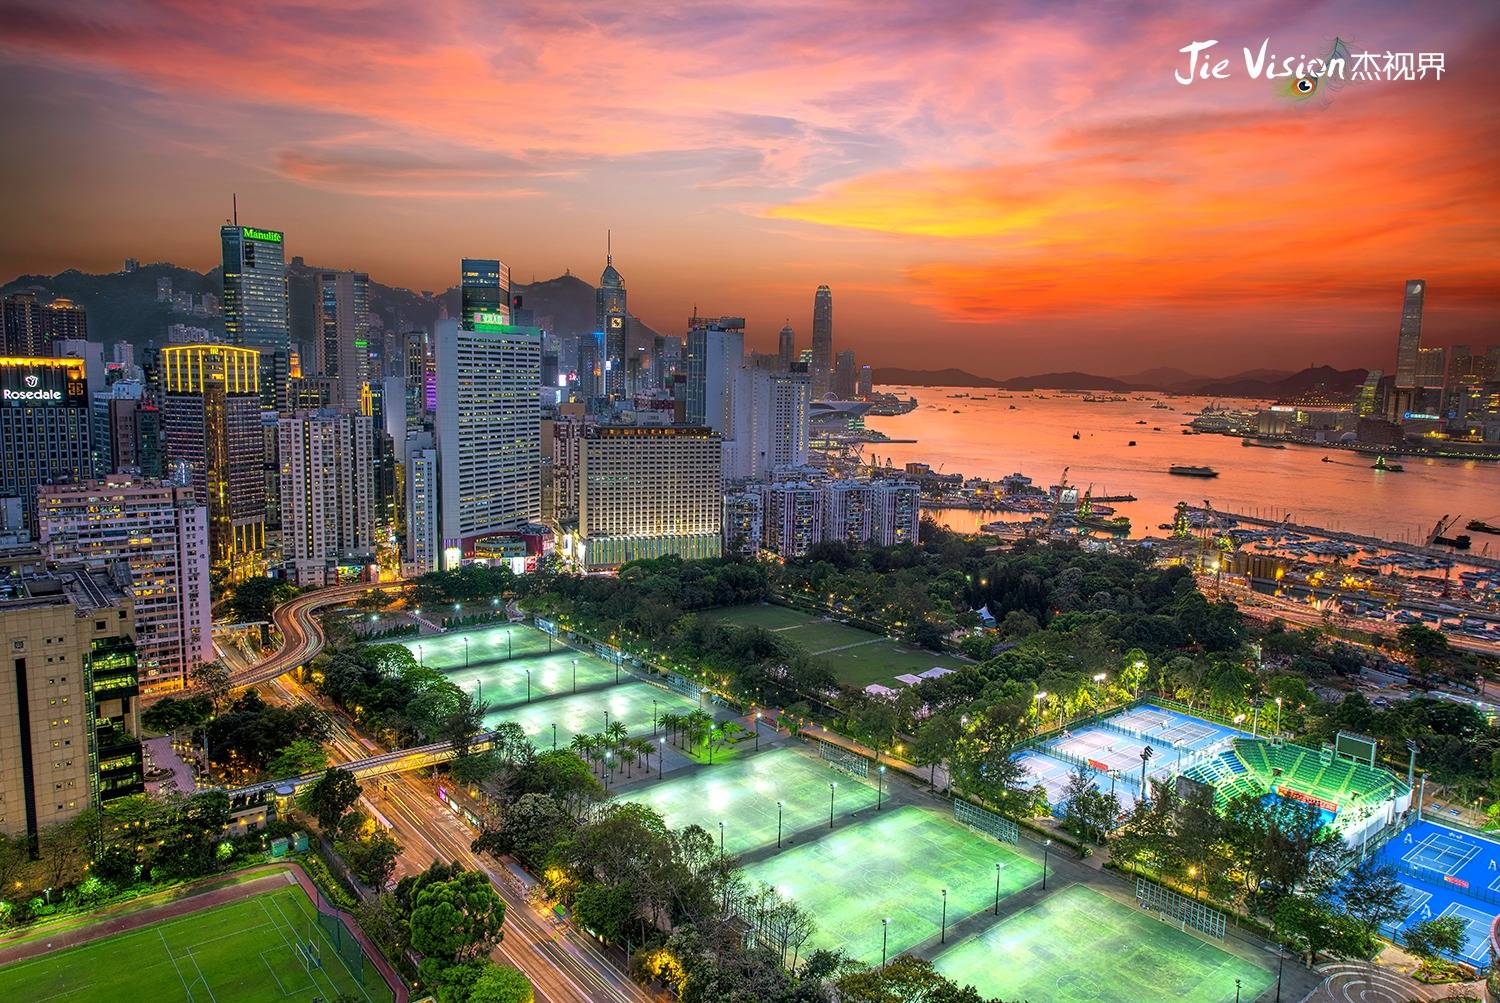 原创             香港旅游有什么好玩的？19张照片 2000字 5分钟 带你游遍东方明珠！